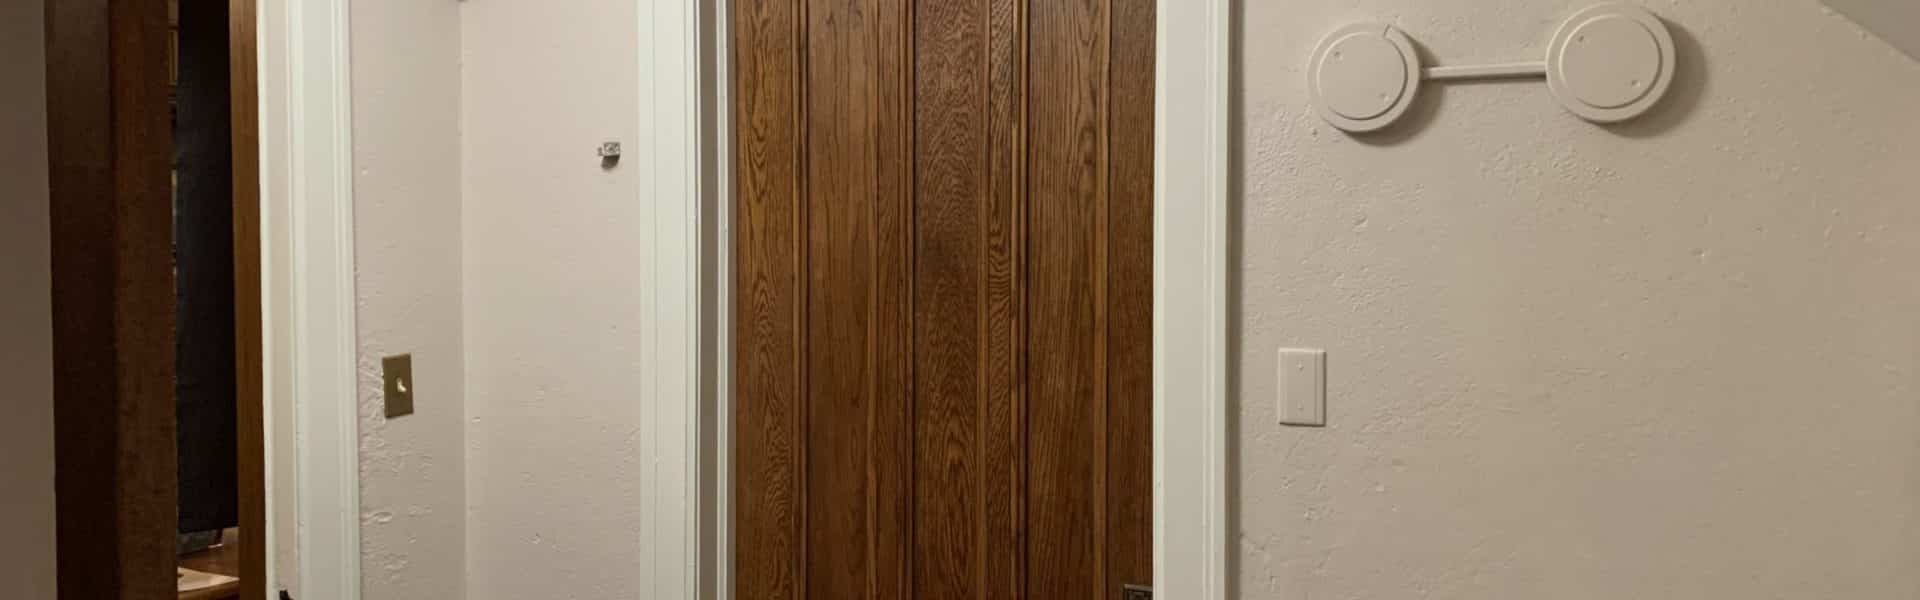 Stained oak door